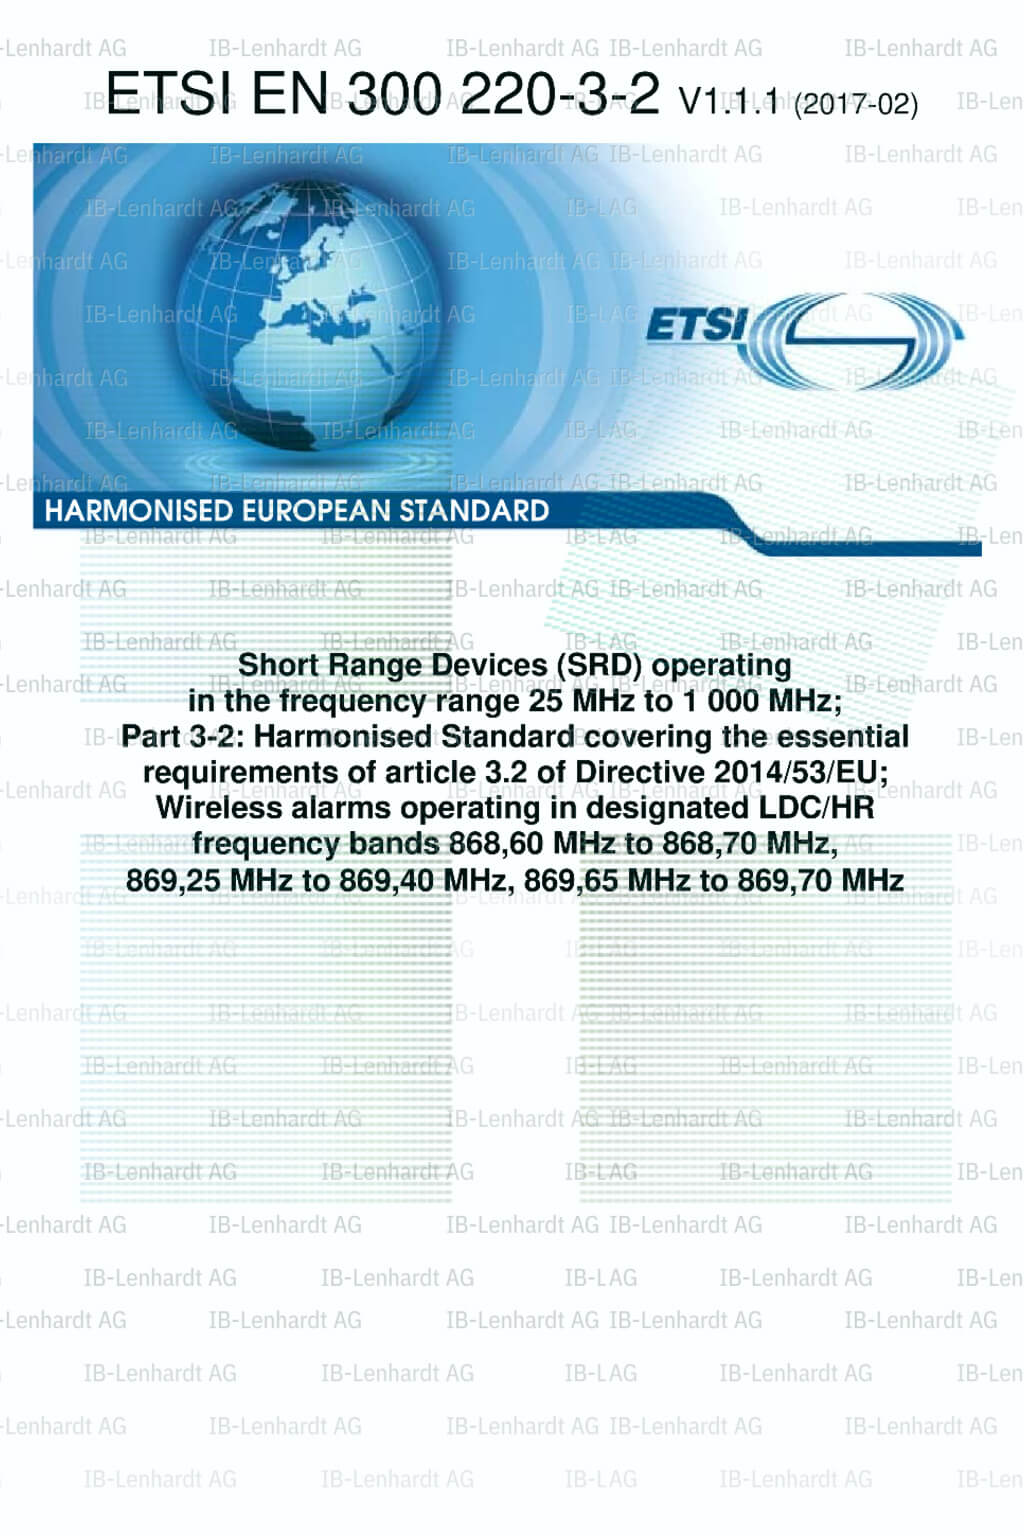 ETSI EN 300 220-3-2 V1.1.1 